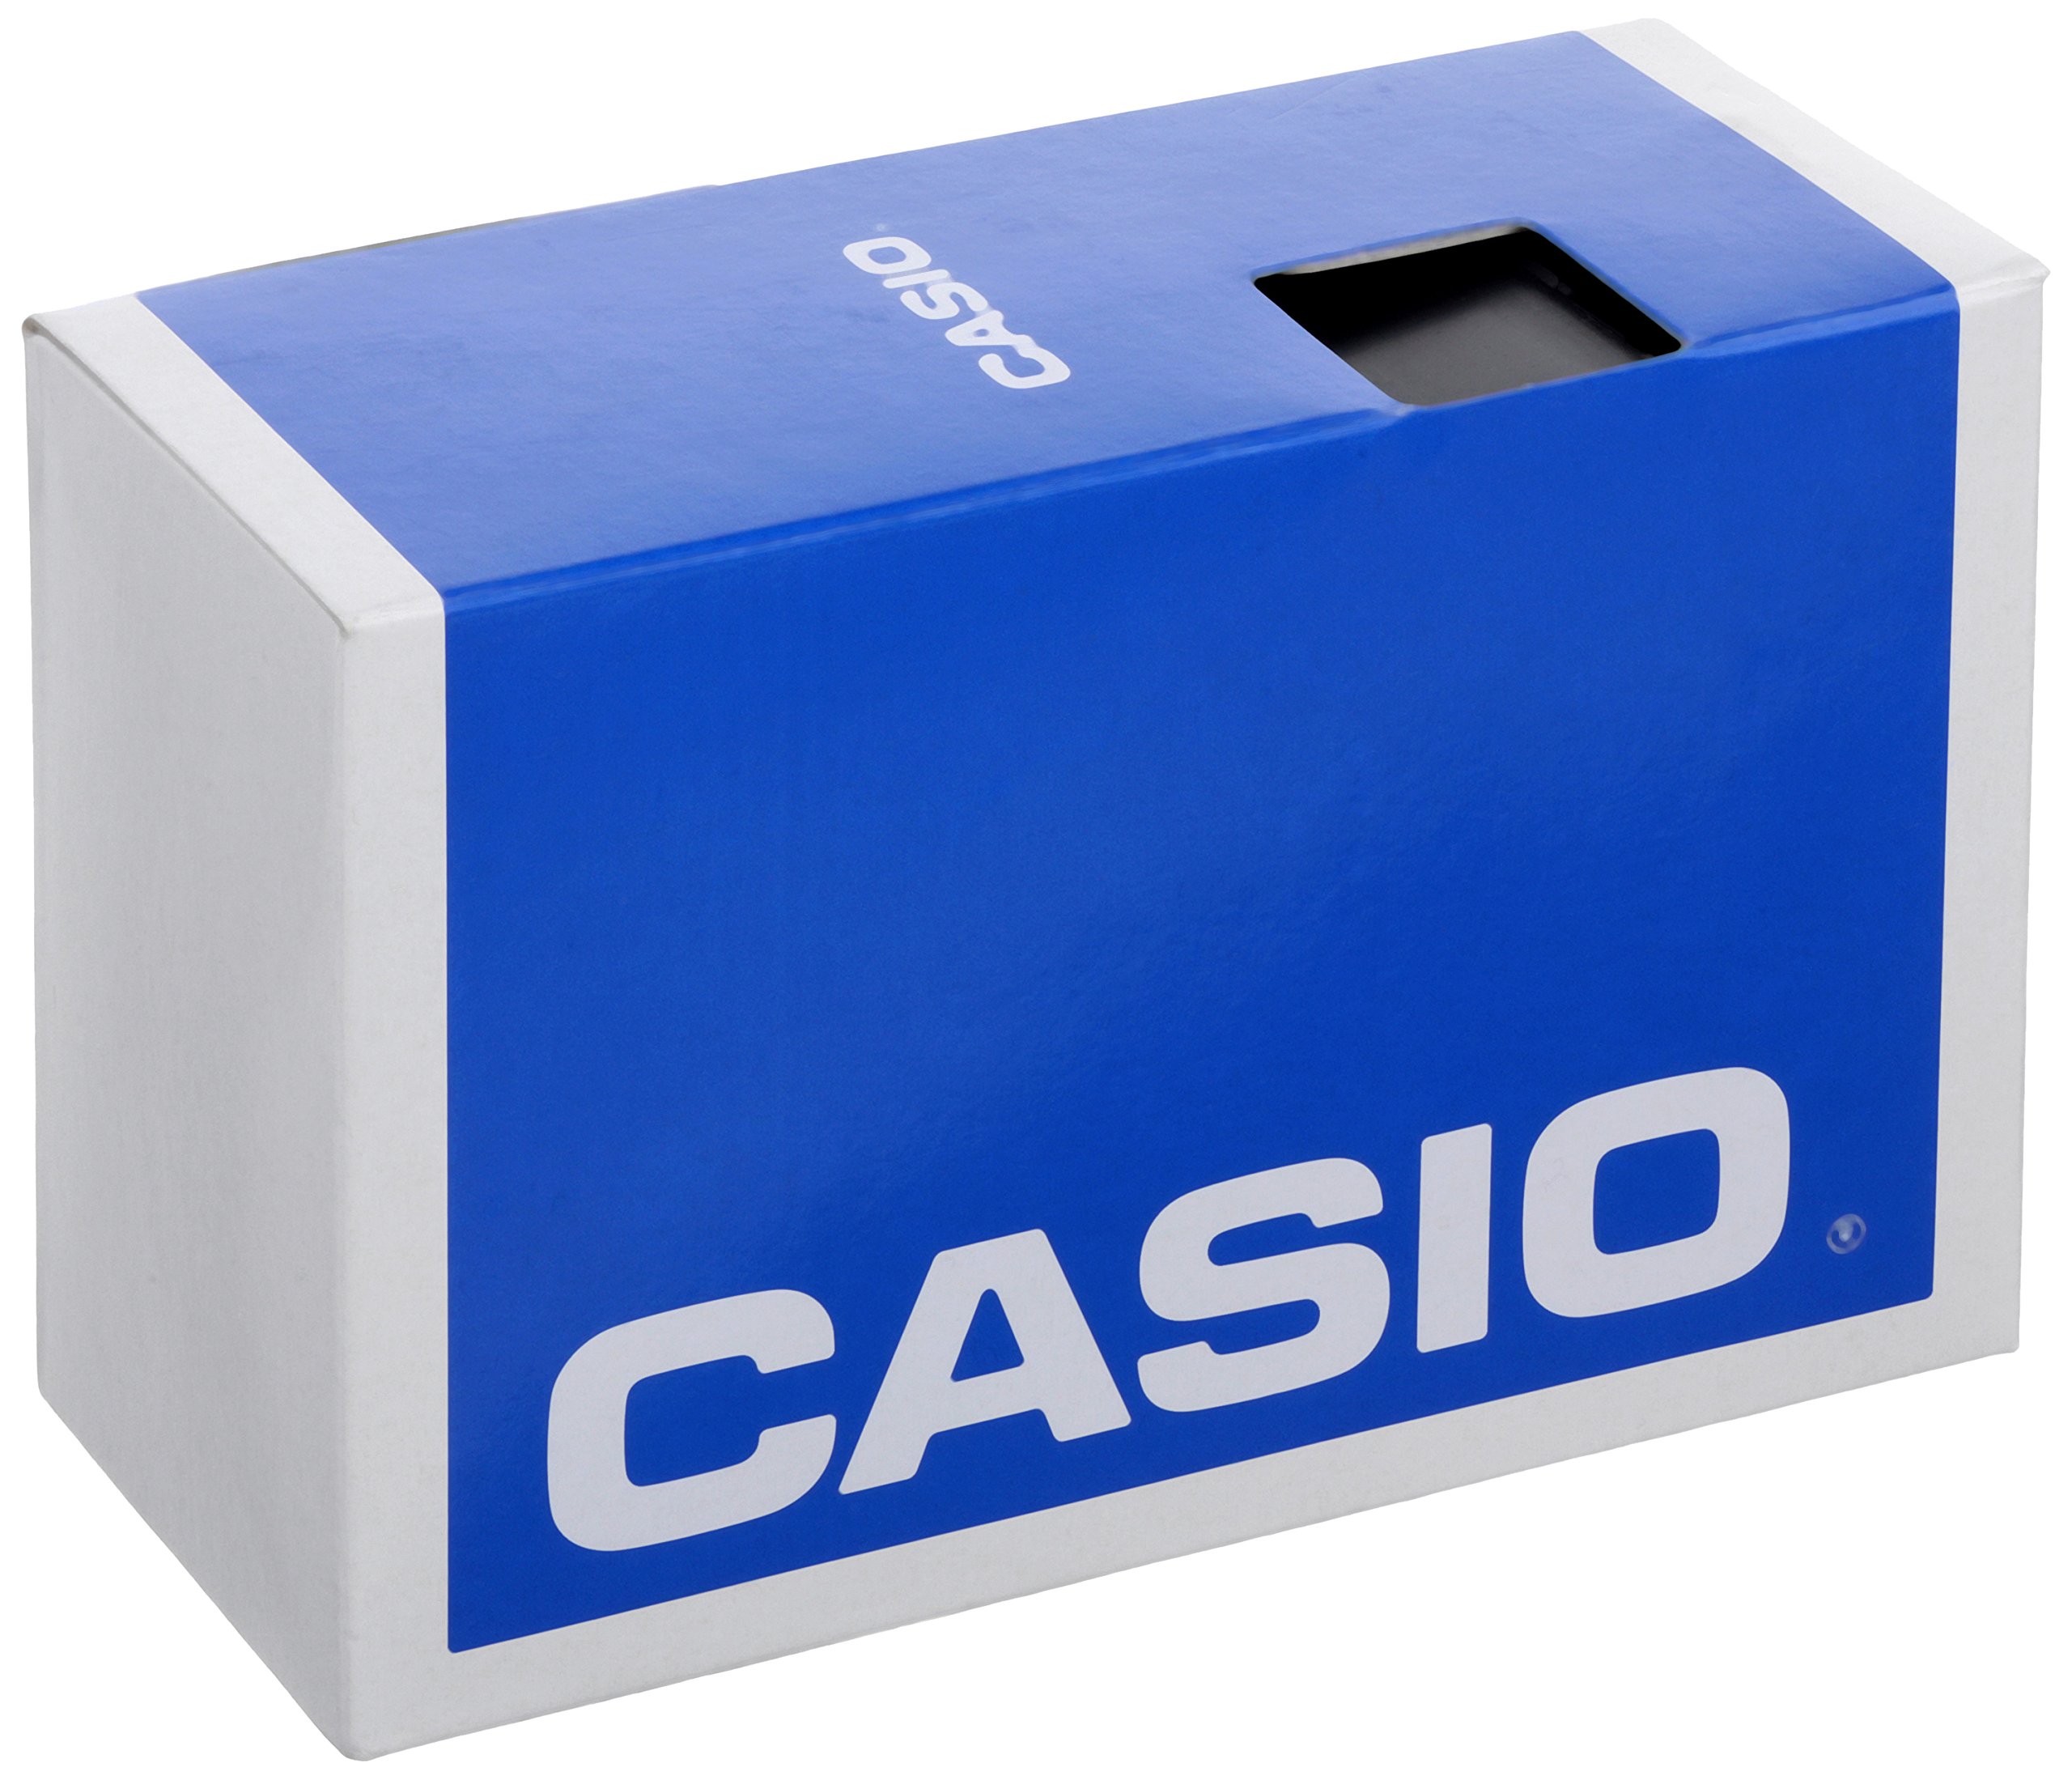 Casio Men's AE-2100W-4AVCF Digital 10-Year Battery Digital Display Quartz Orange Watch